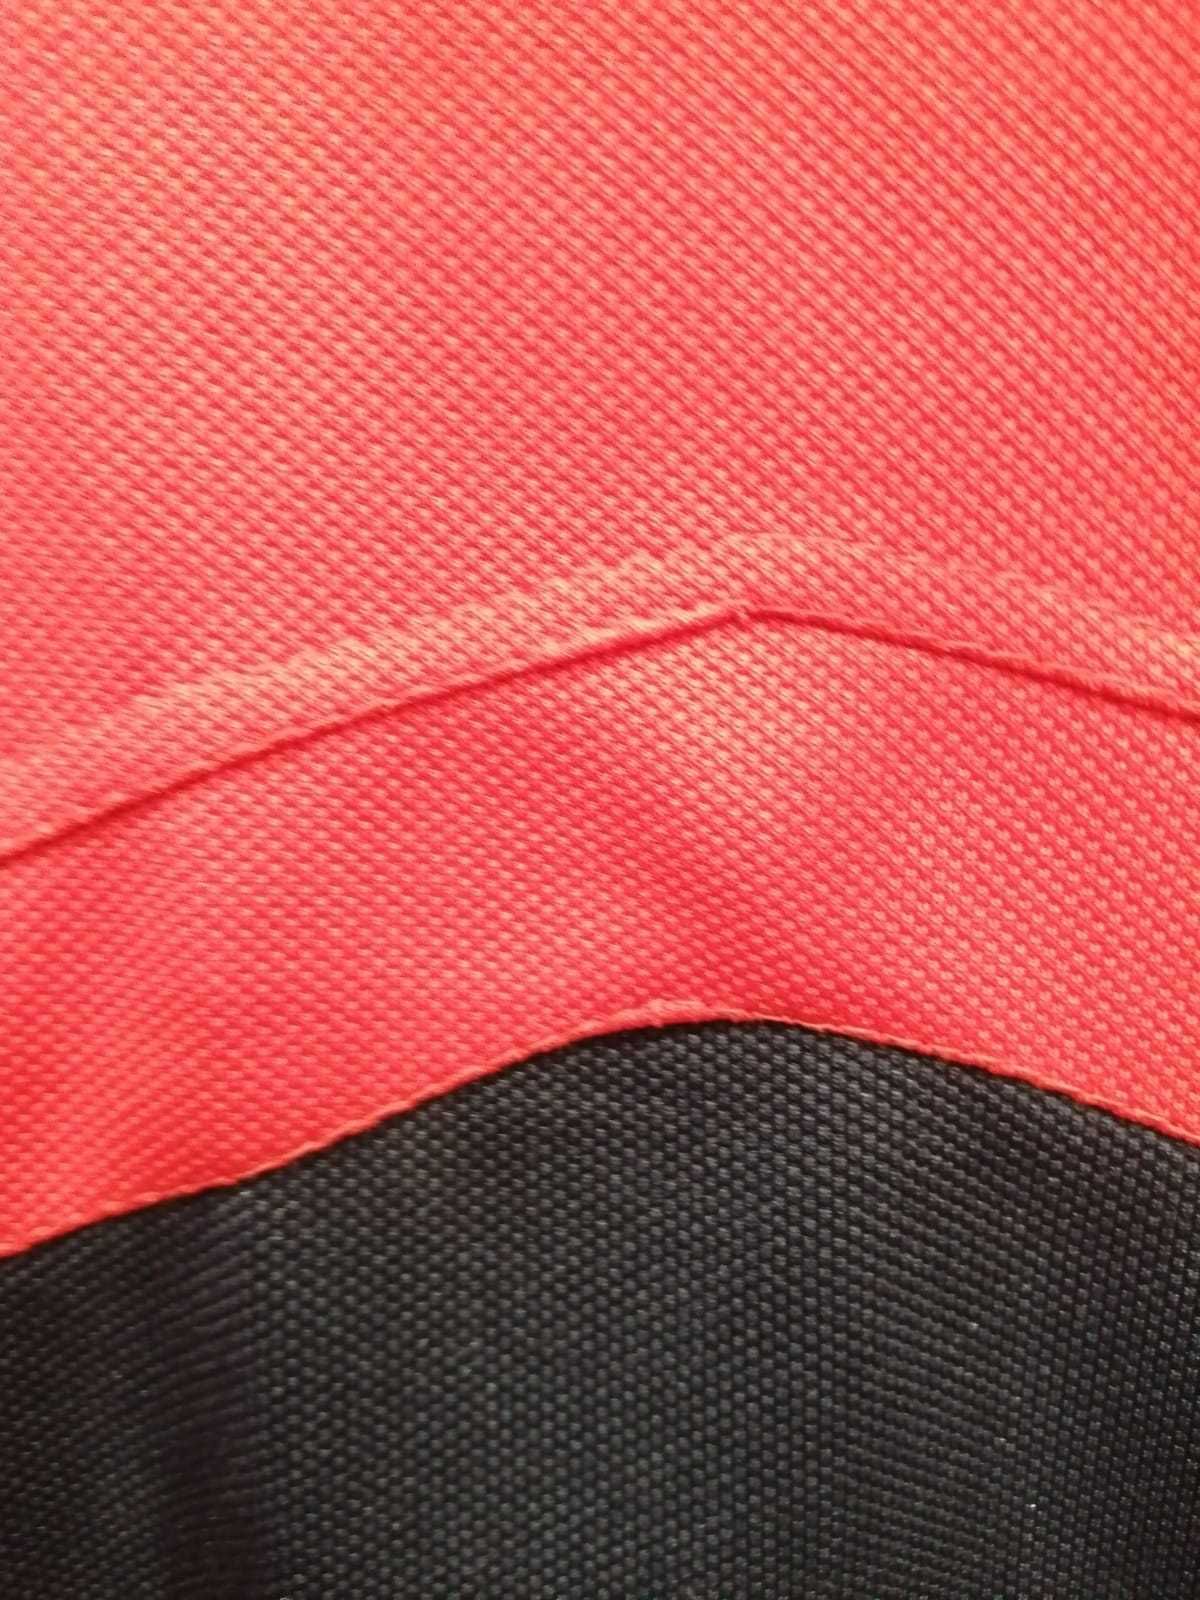 Продам НОВЫЙ спортивный костюм рост 180-190/размер 52-54/ярко красный